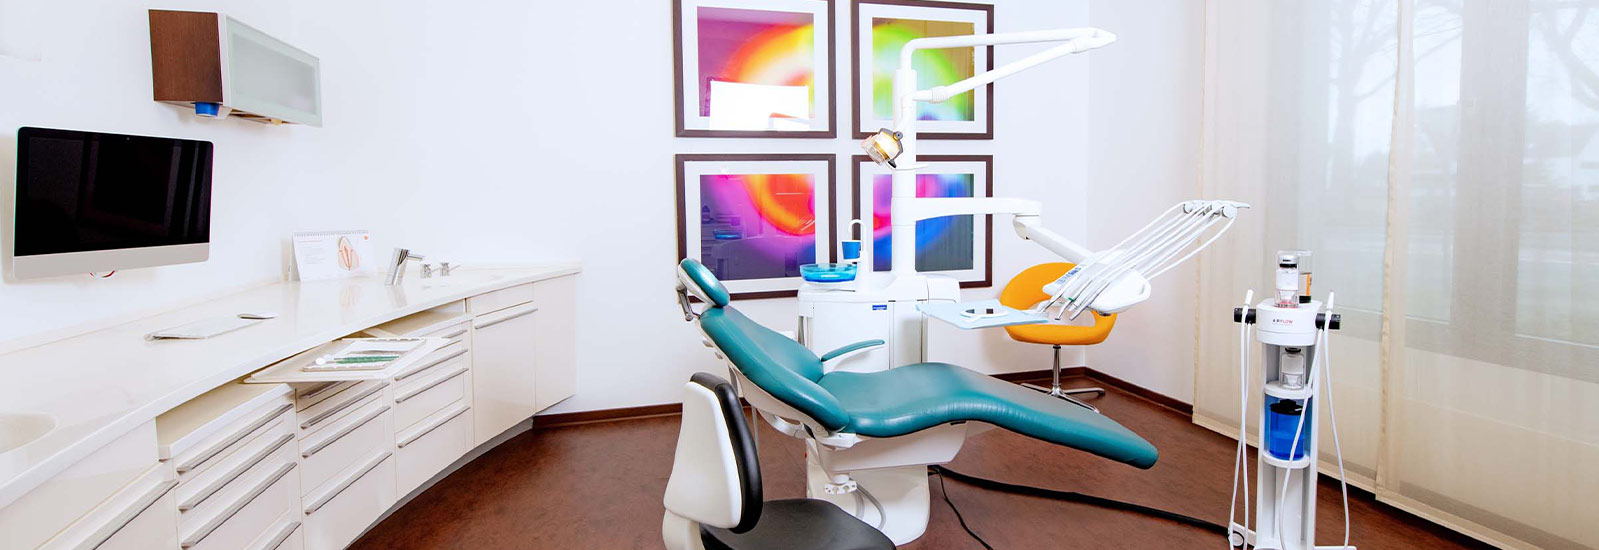 Zahnbehandlung für Senioren in Düsseldorf